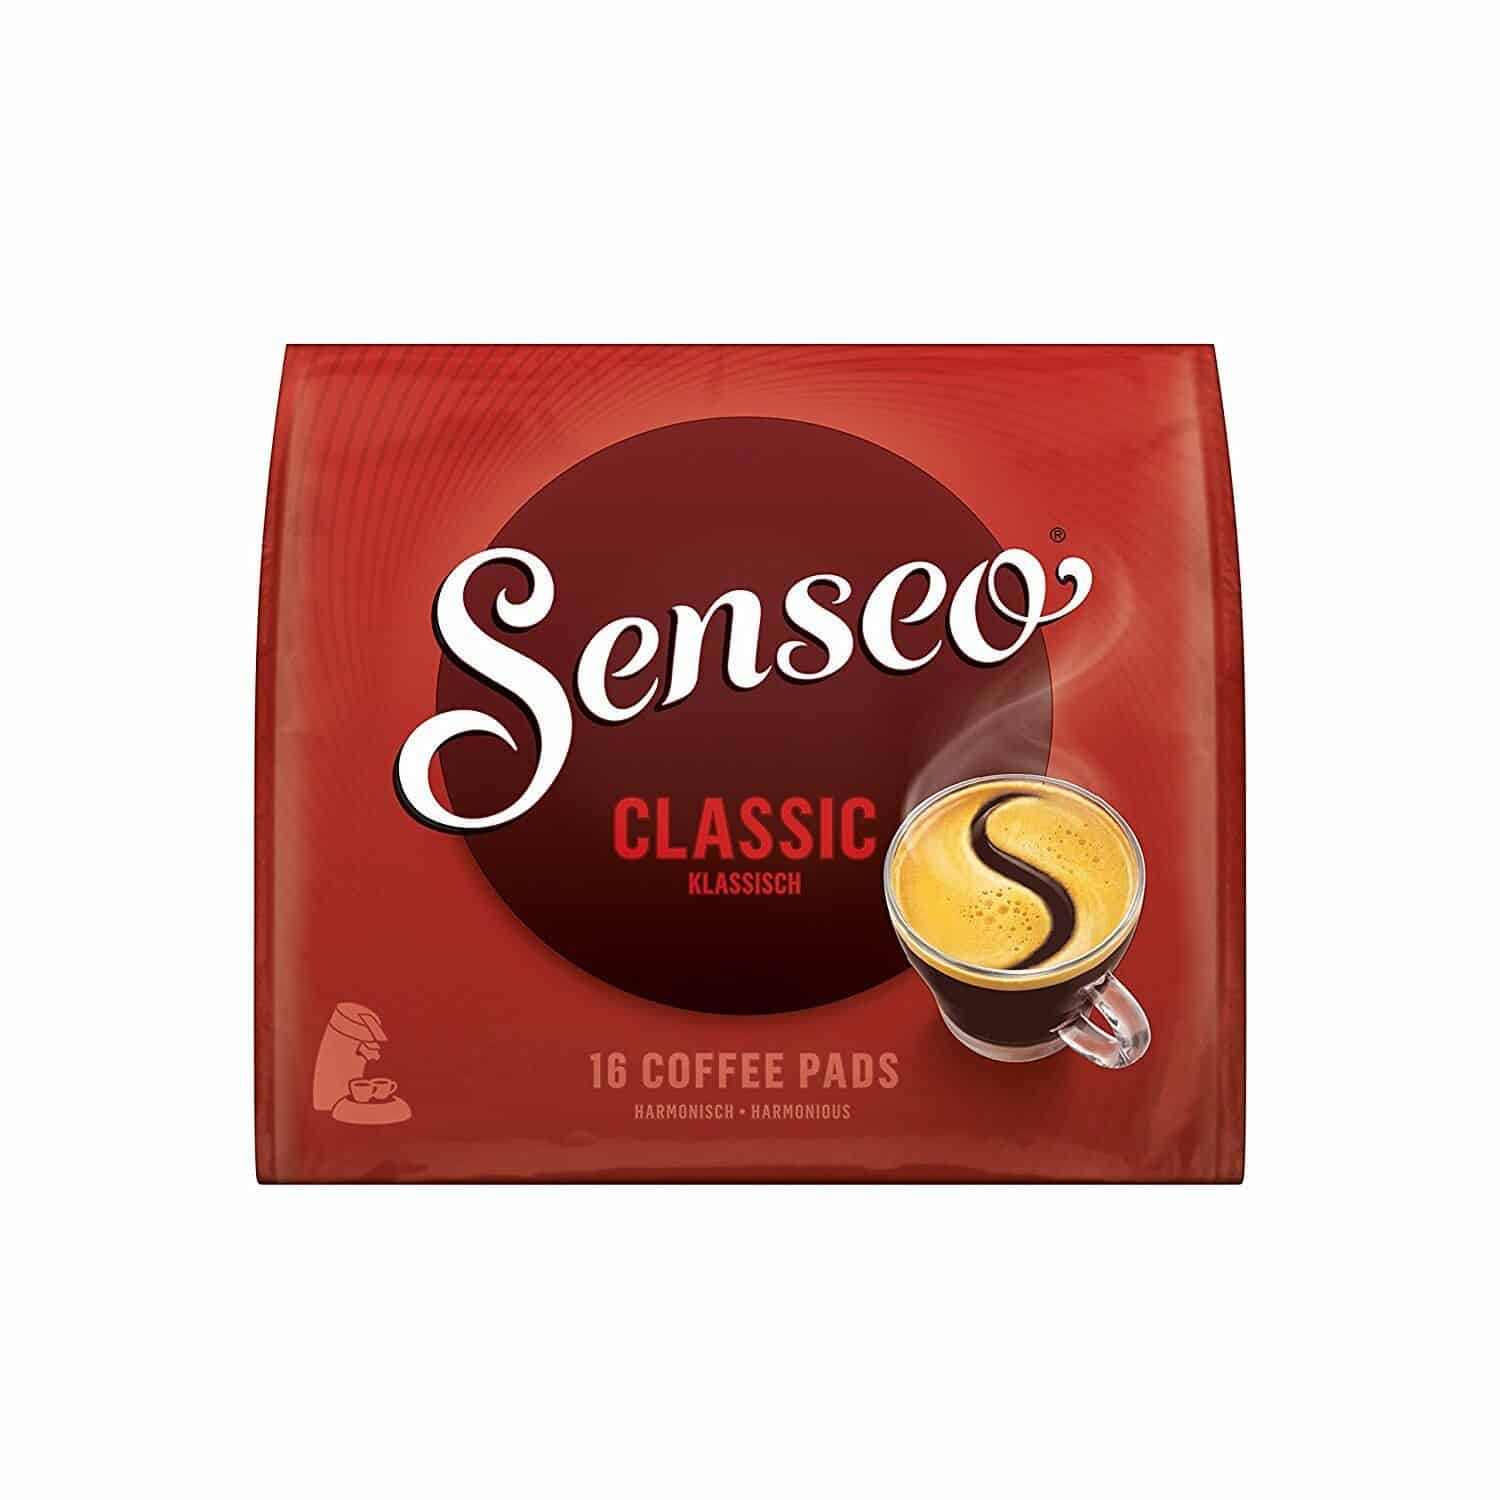 Wacht even Afkorten revolutie Senseo Classic Coffee Pods - 16 Pods - 111g / 3.91 oz. | Buy German Food  Online